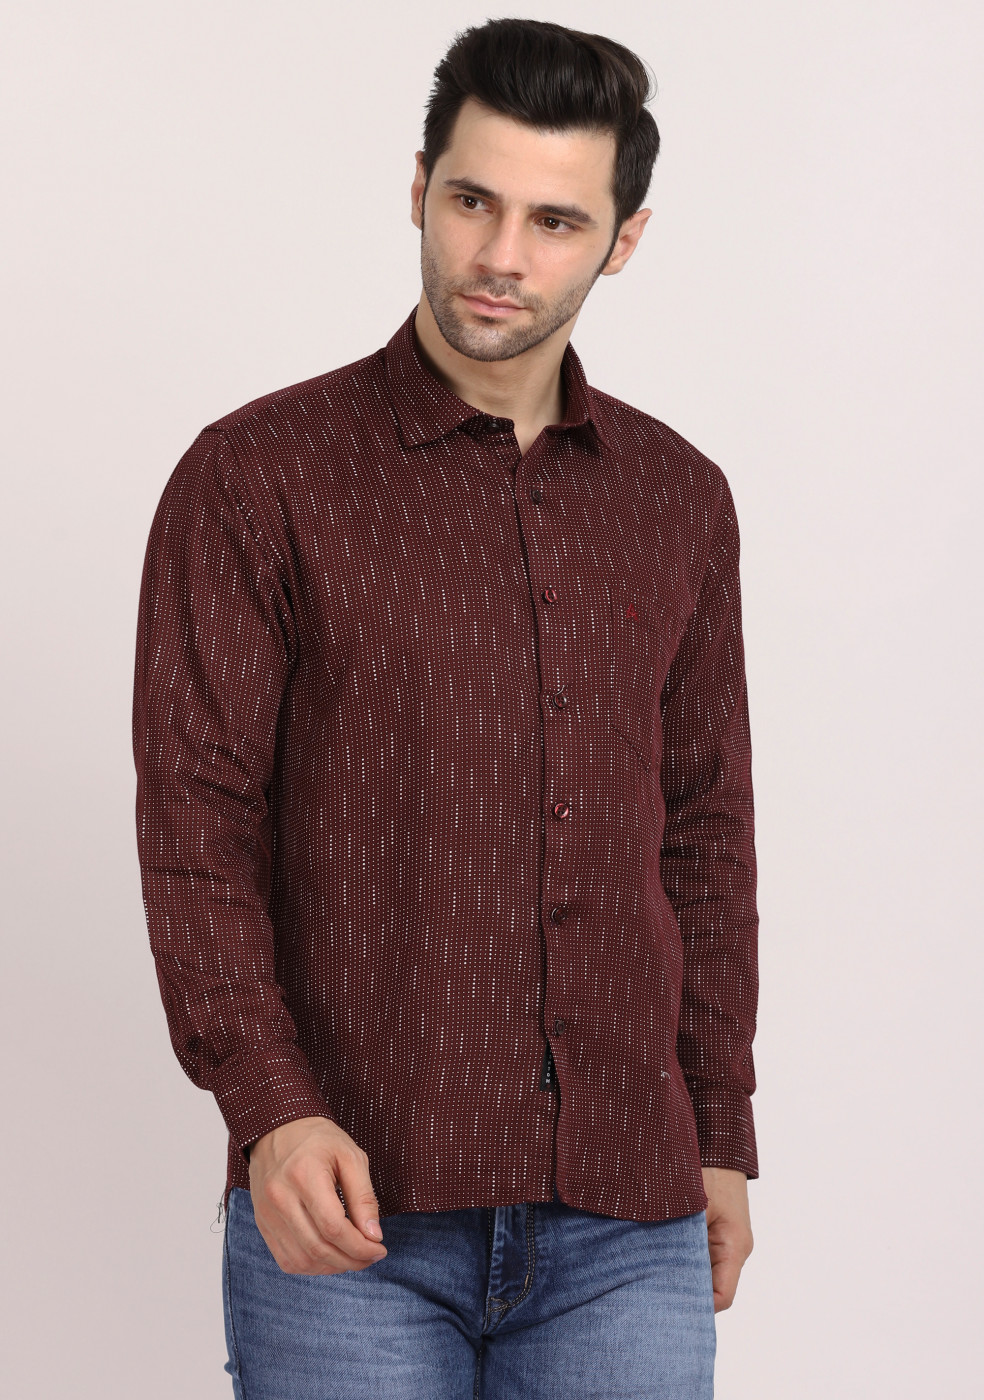 ASHTOM Maroon Print Regular Fit Cotton Shirt For Men